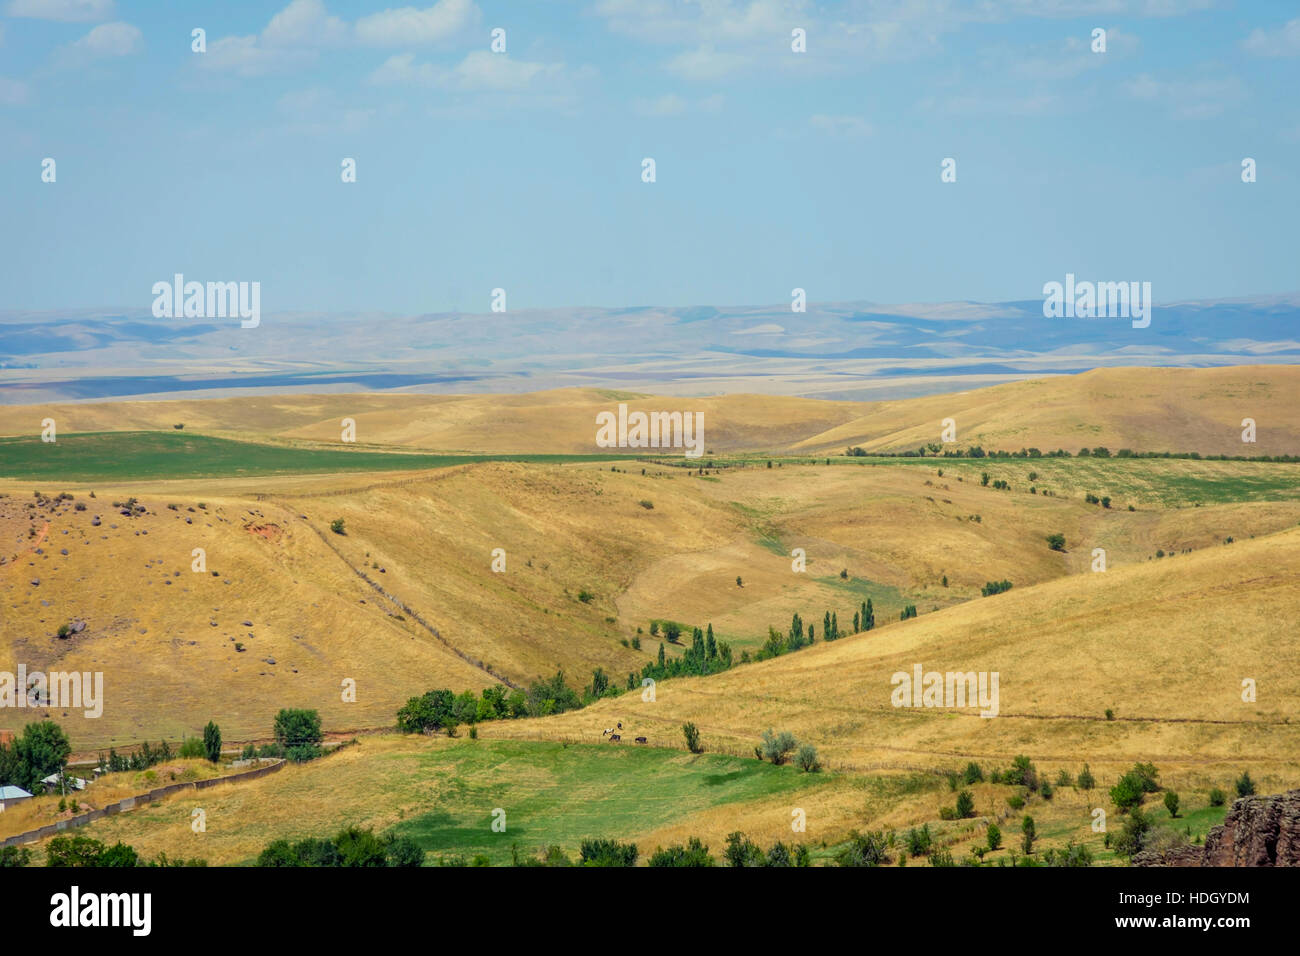 Endless golden color kazakh grass landscape Stock Photo - Alamy